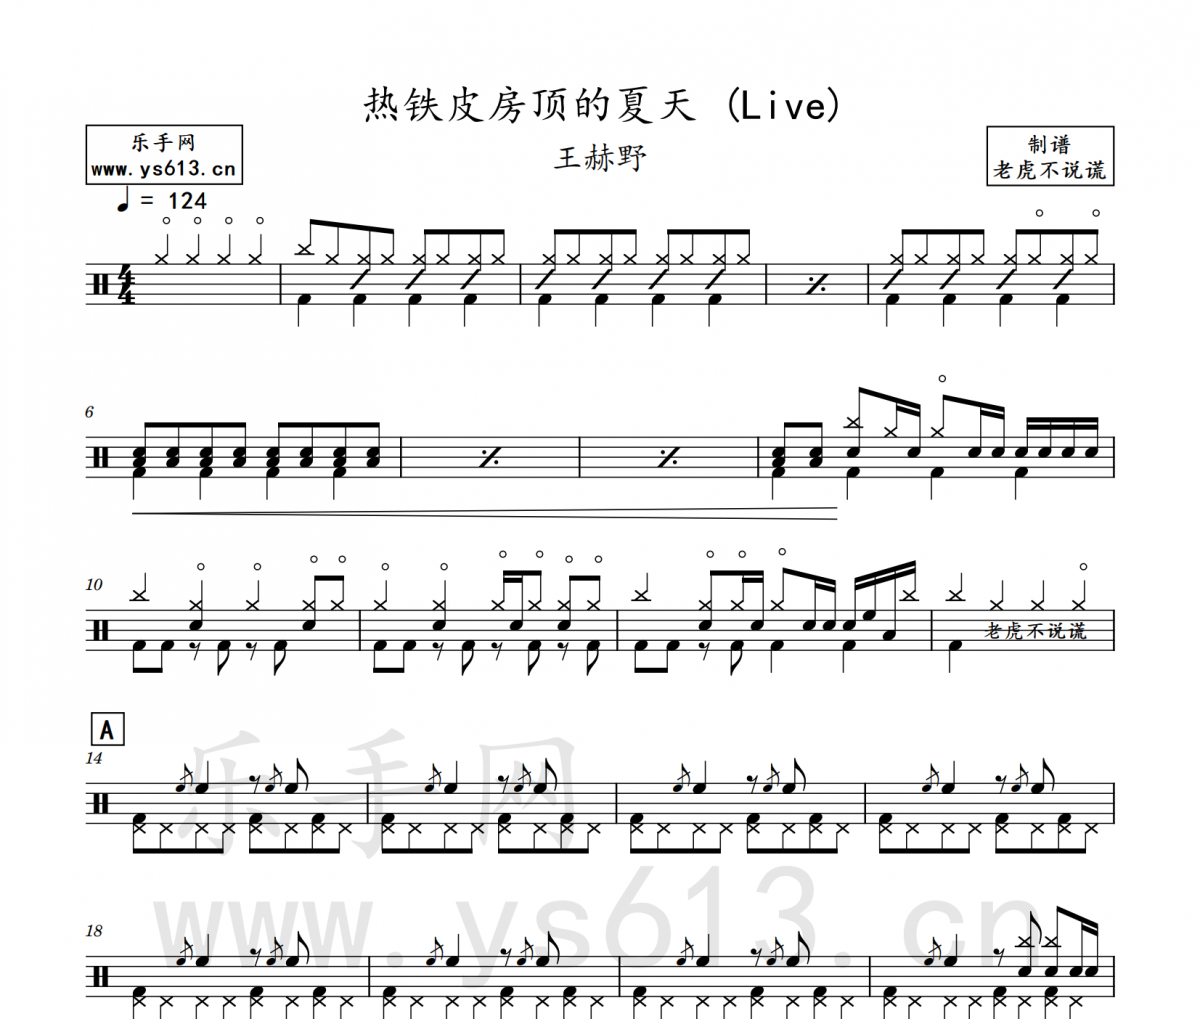 王赫野-热铁皮房顶的夏天 (Live)架子鼓谱爵士鼓曲谱